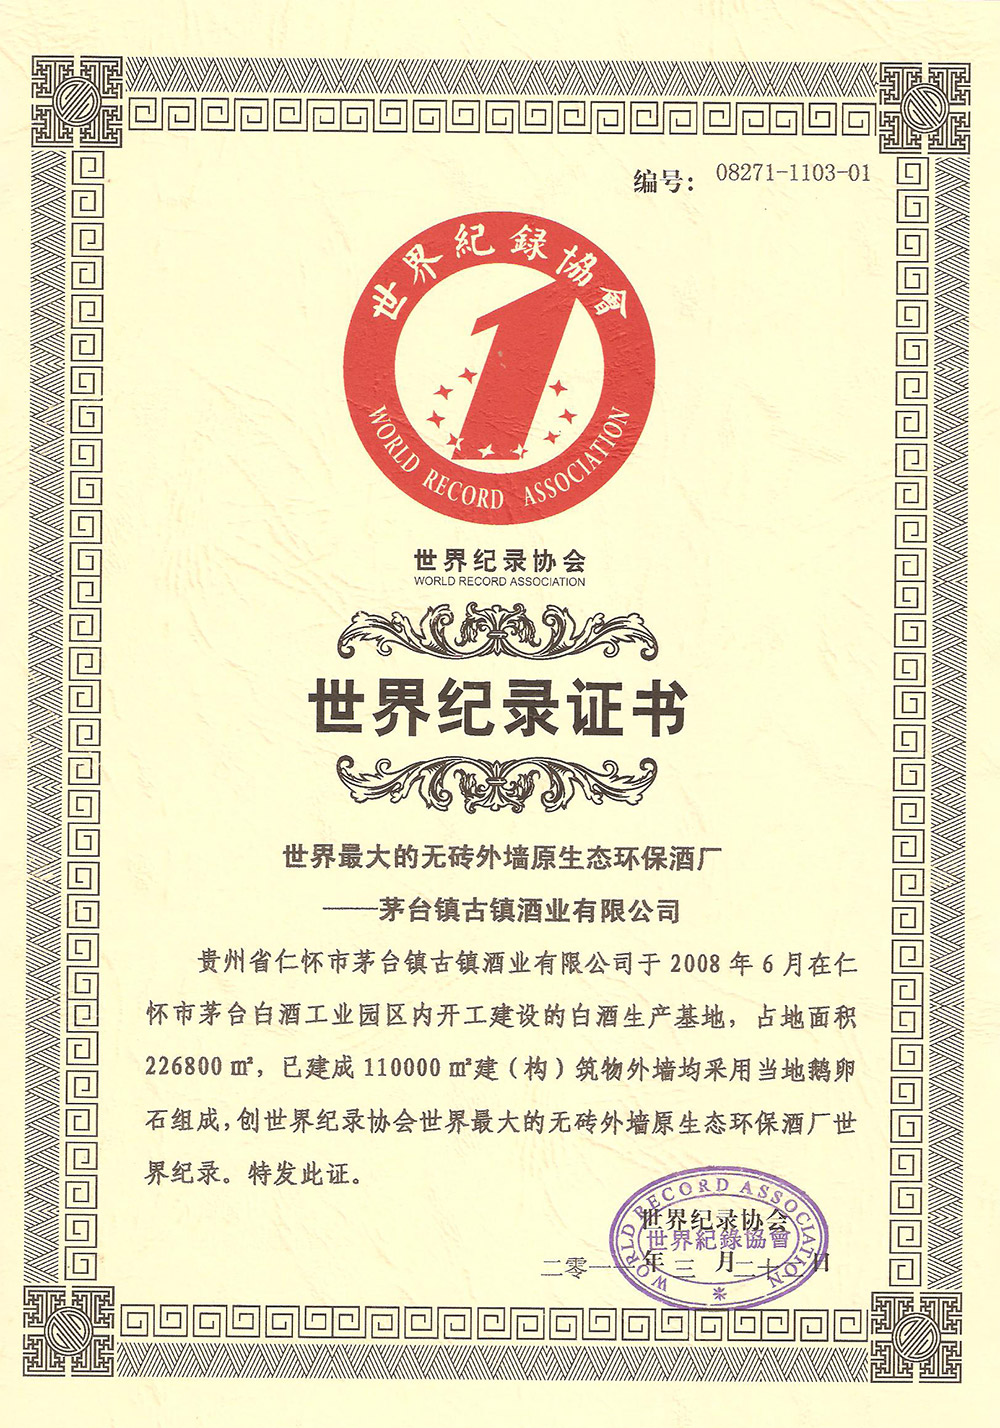 世界纪录协会证书